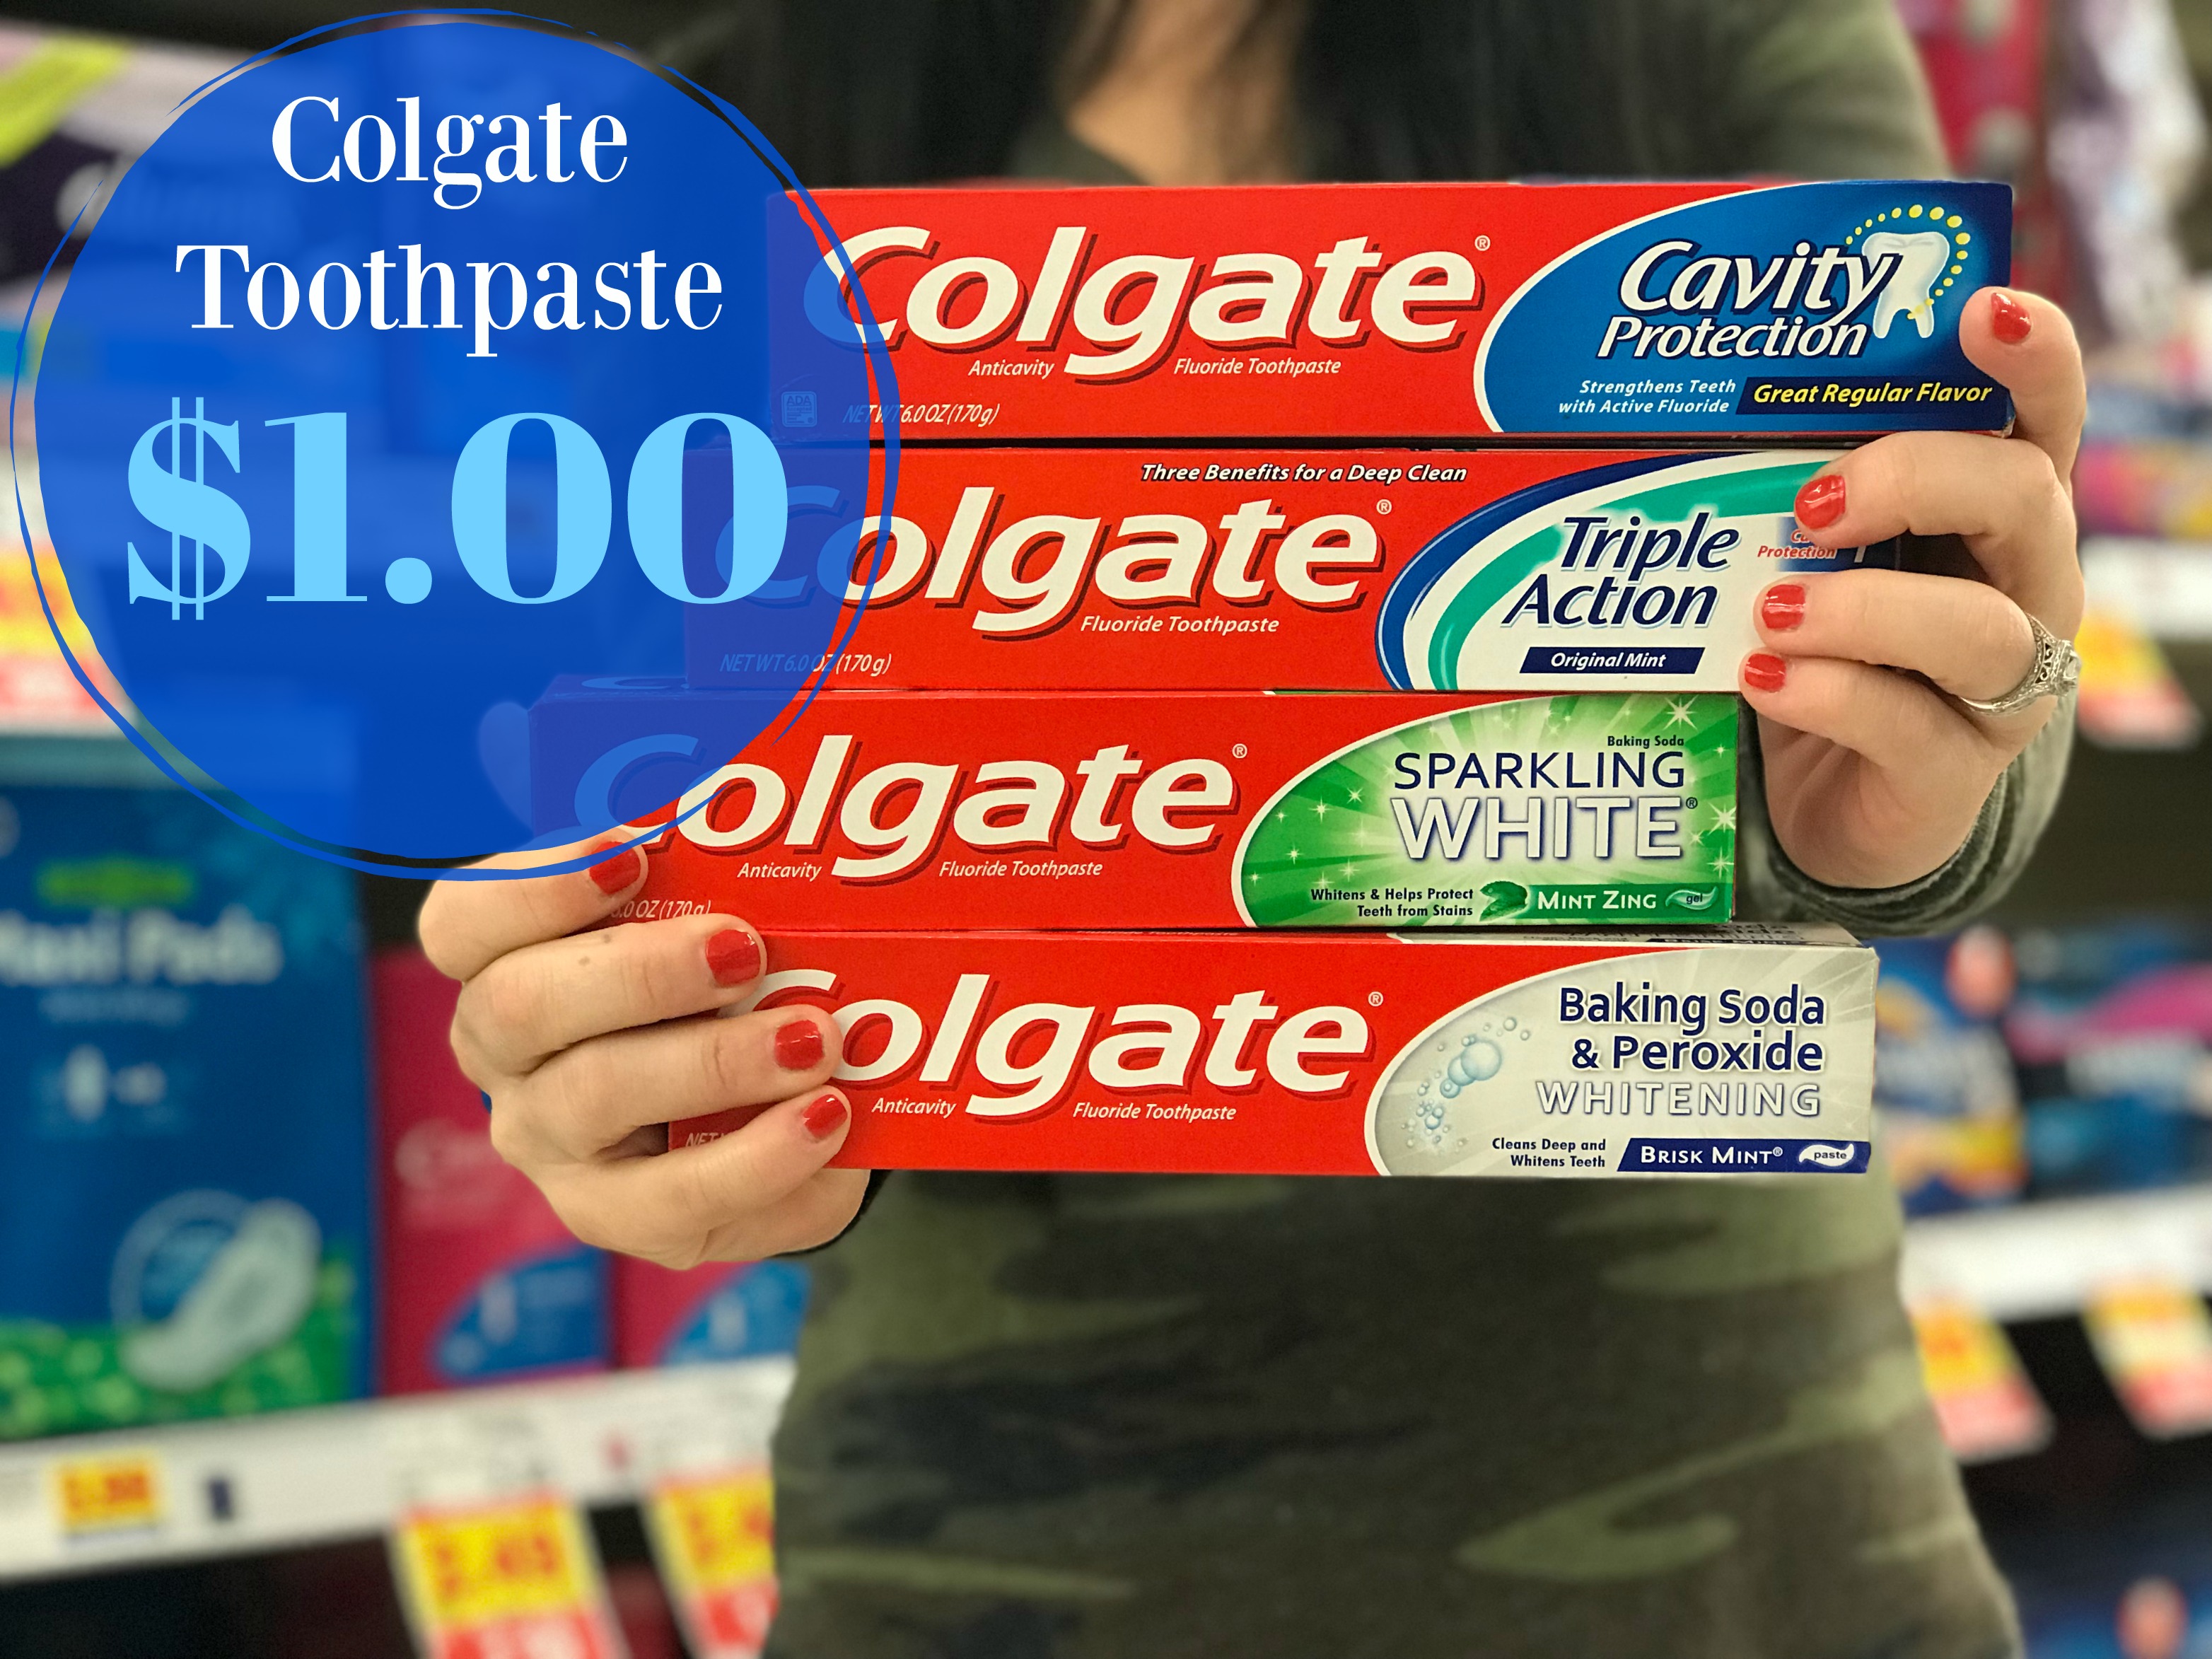 Colgate Toothpaste Only 1.00 at Kroger! Kroger Krazy